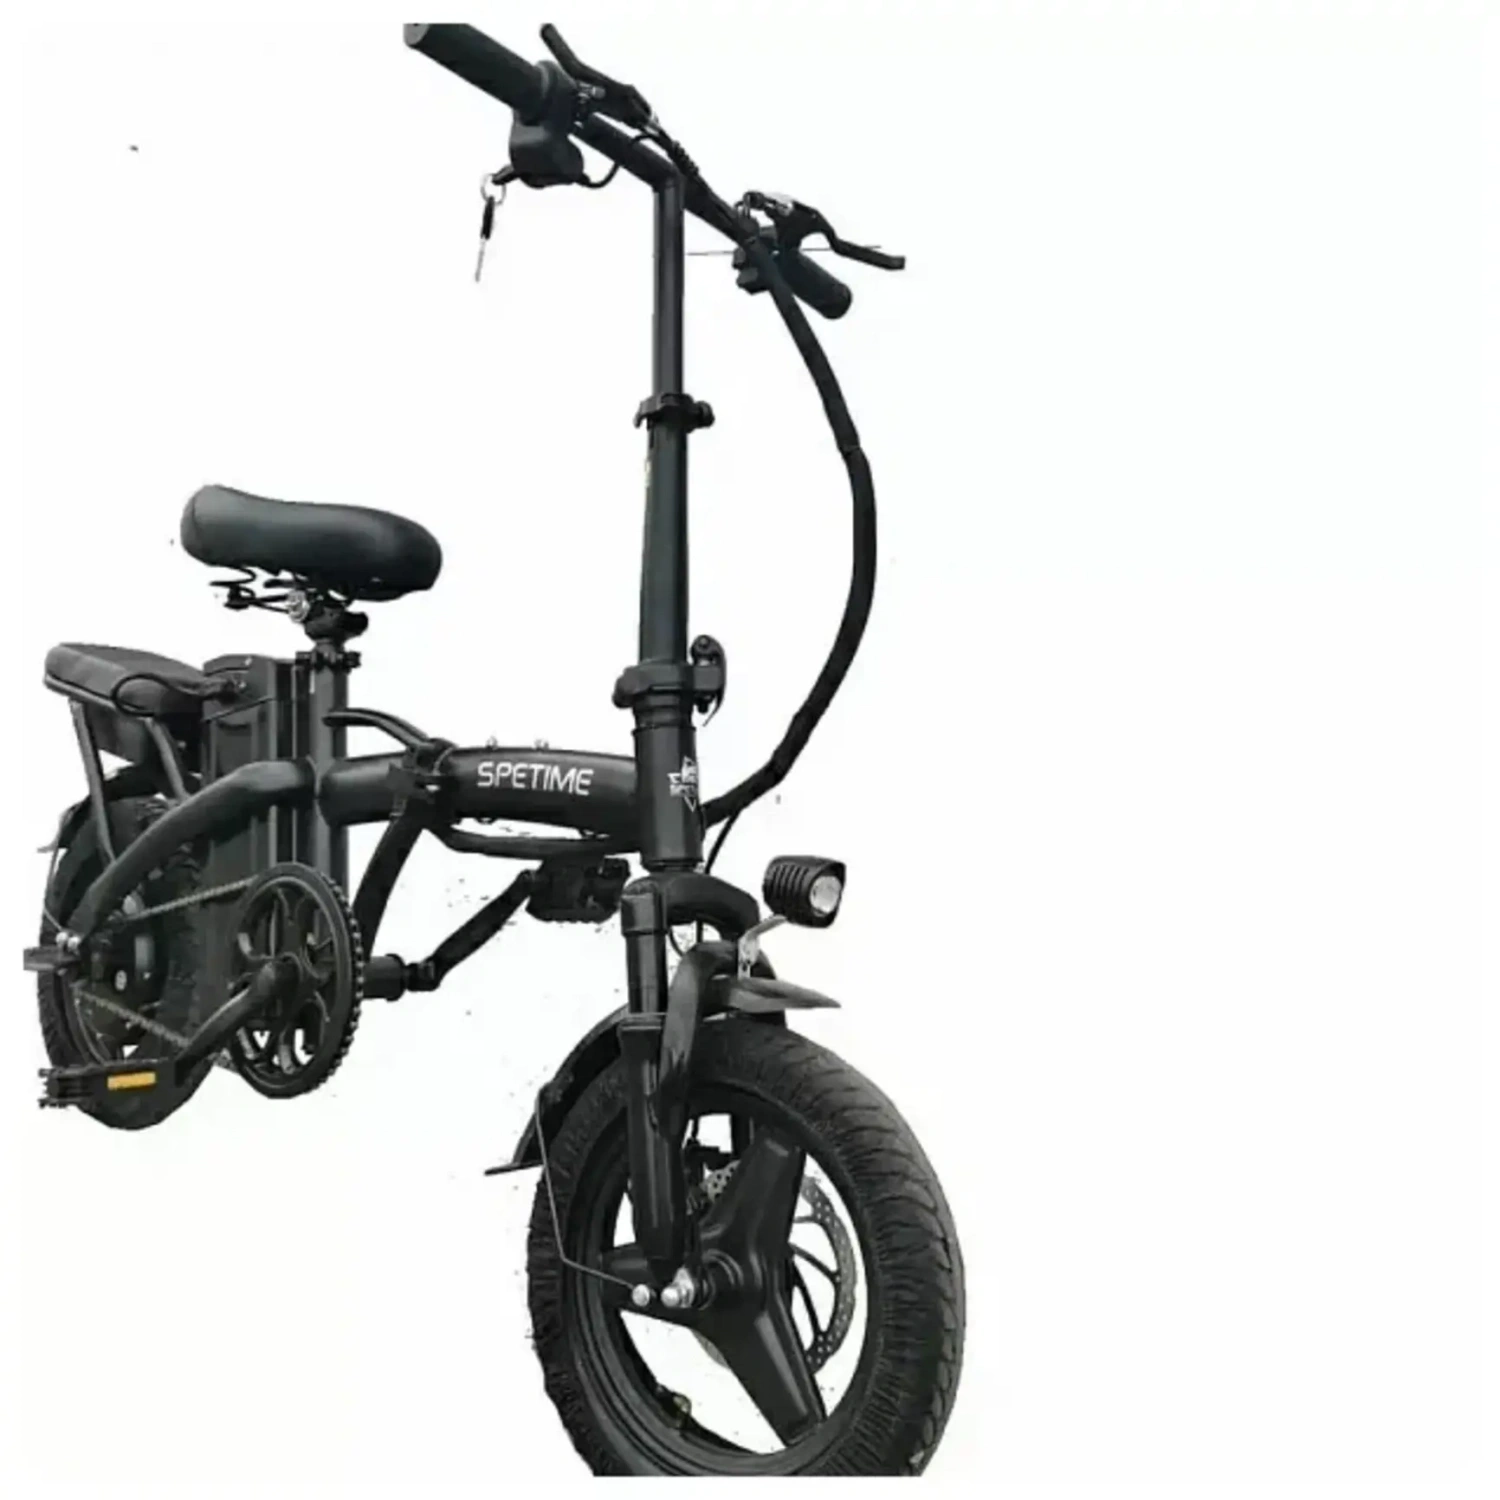 Купить электровелосипед в иваново. Электровелосипед SPETIME E-Bike s6. Электровелосипед SPETIME E-Bike s6 Air. Электровелосипед SPETIME s9. SPETIME s6 Pro электровелосипед.